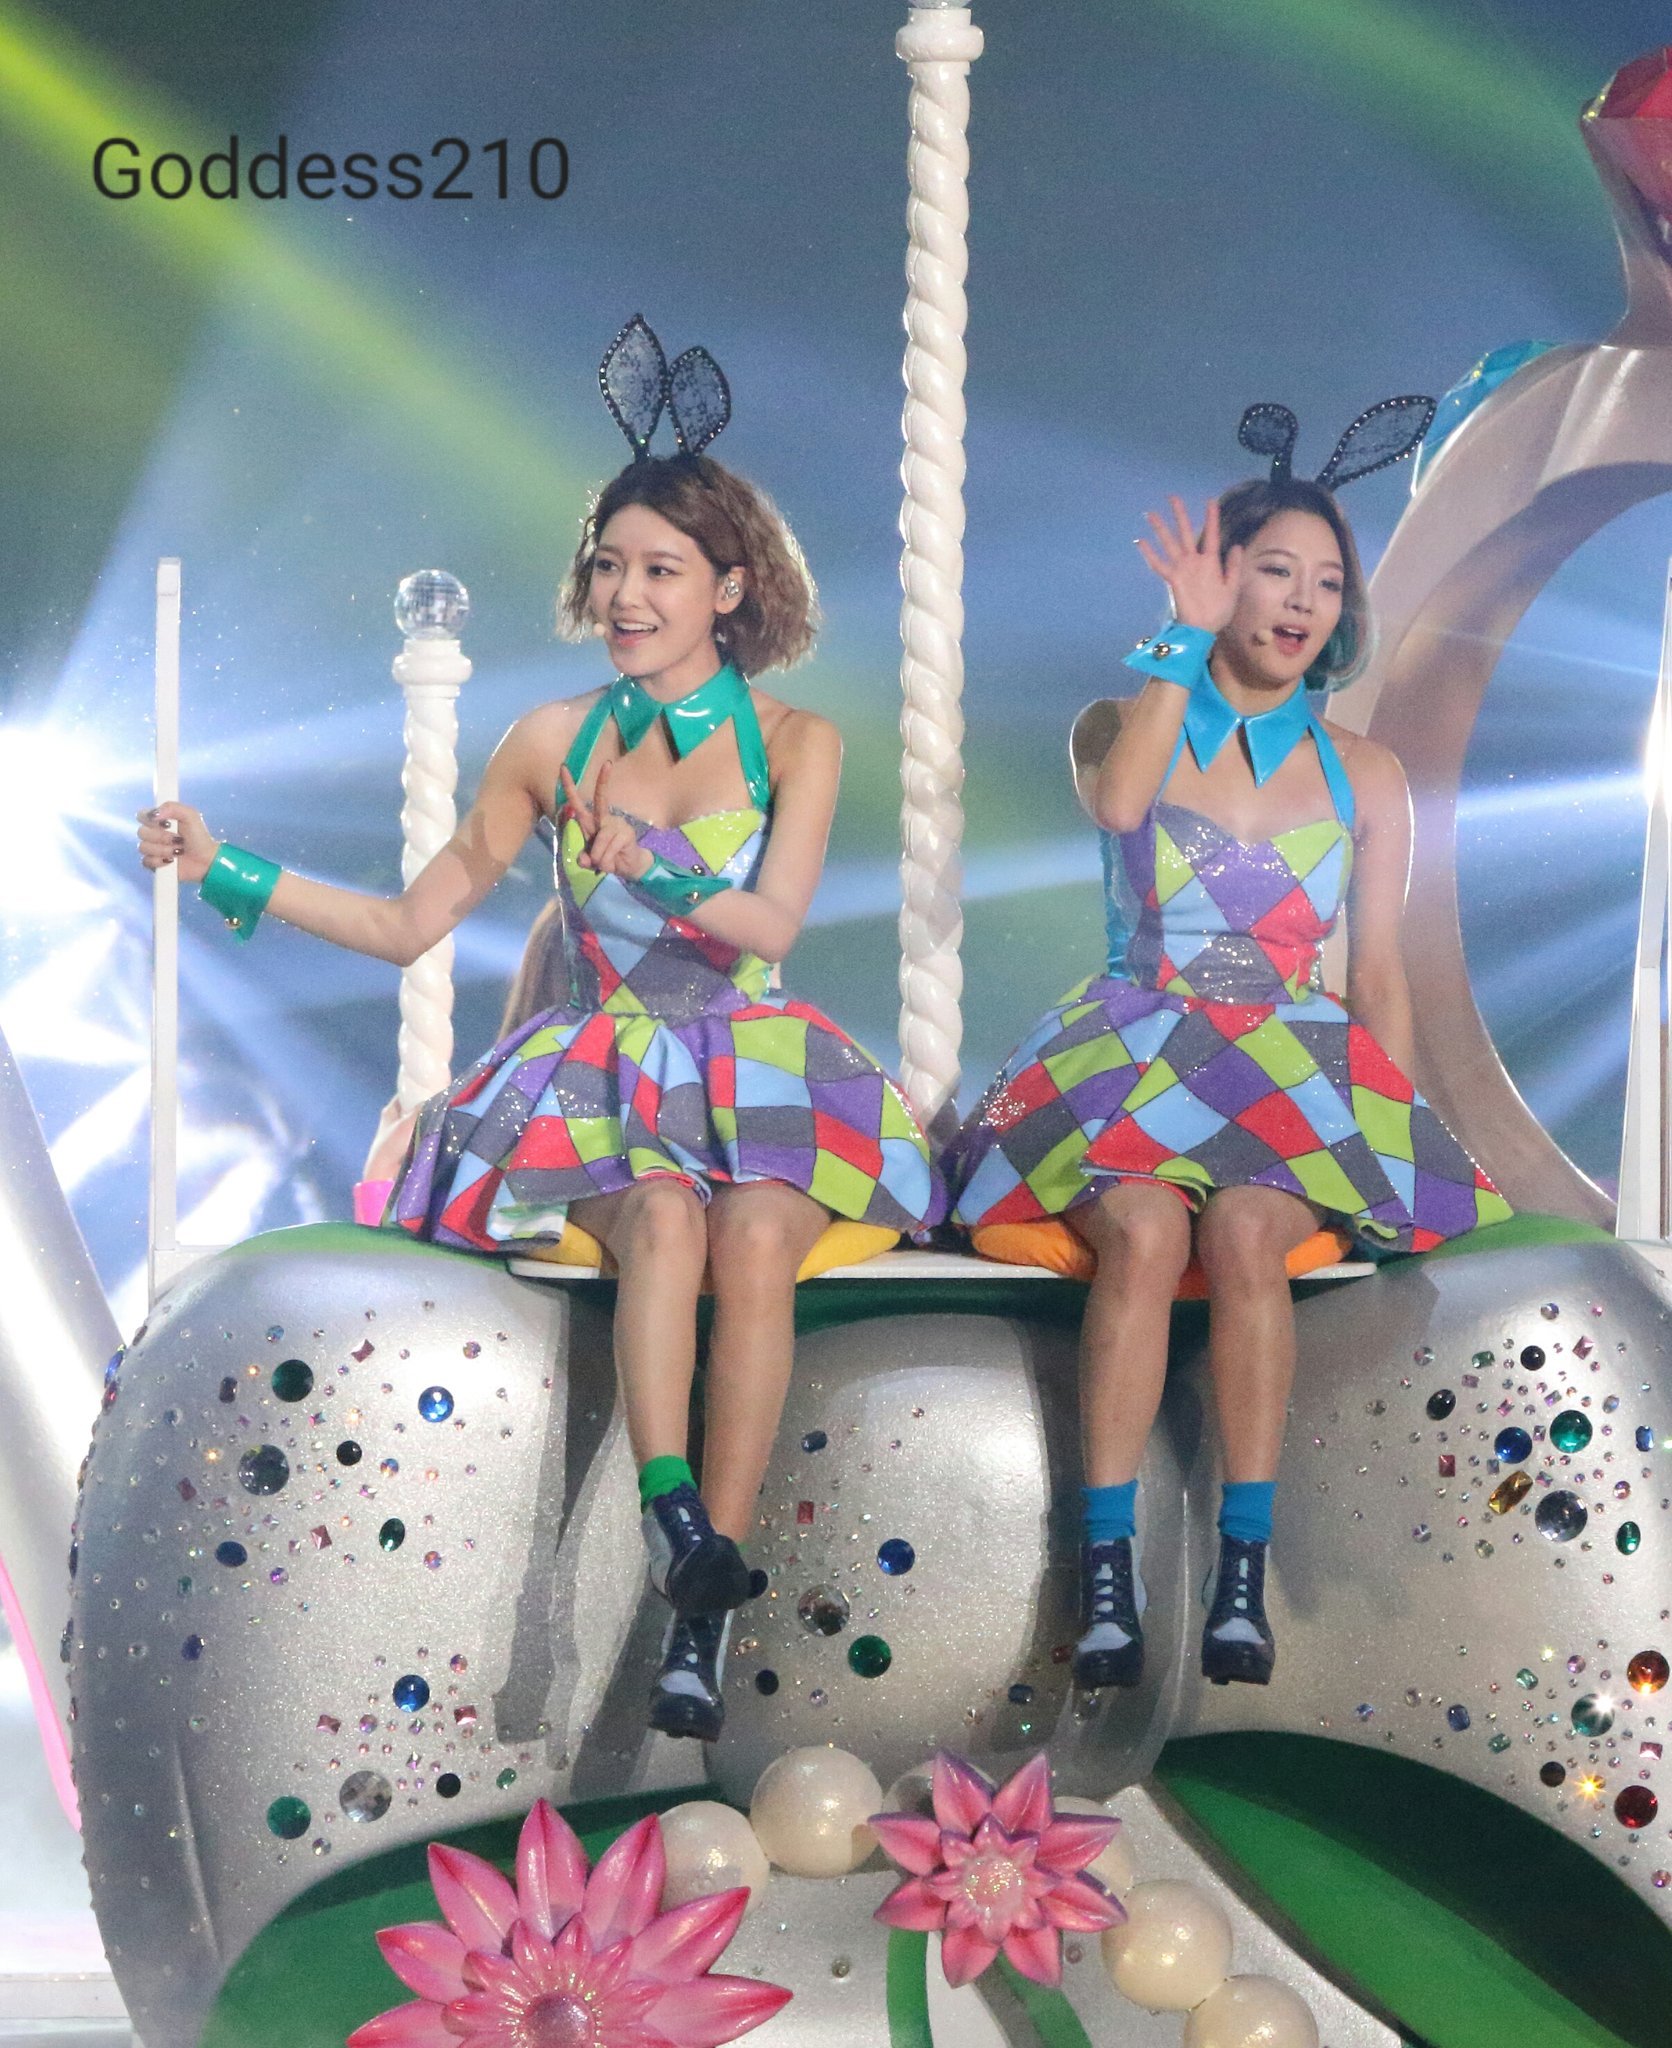 [PIC][12-12-2015]Hình ảnh mới nhất từ "GIRLS' GENERATION 4th Tour PHANTASIA in Japan" của SNSD - Page 3 G6rxjO1pyL-3000x3000